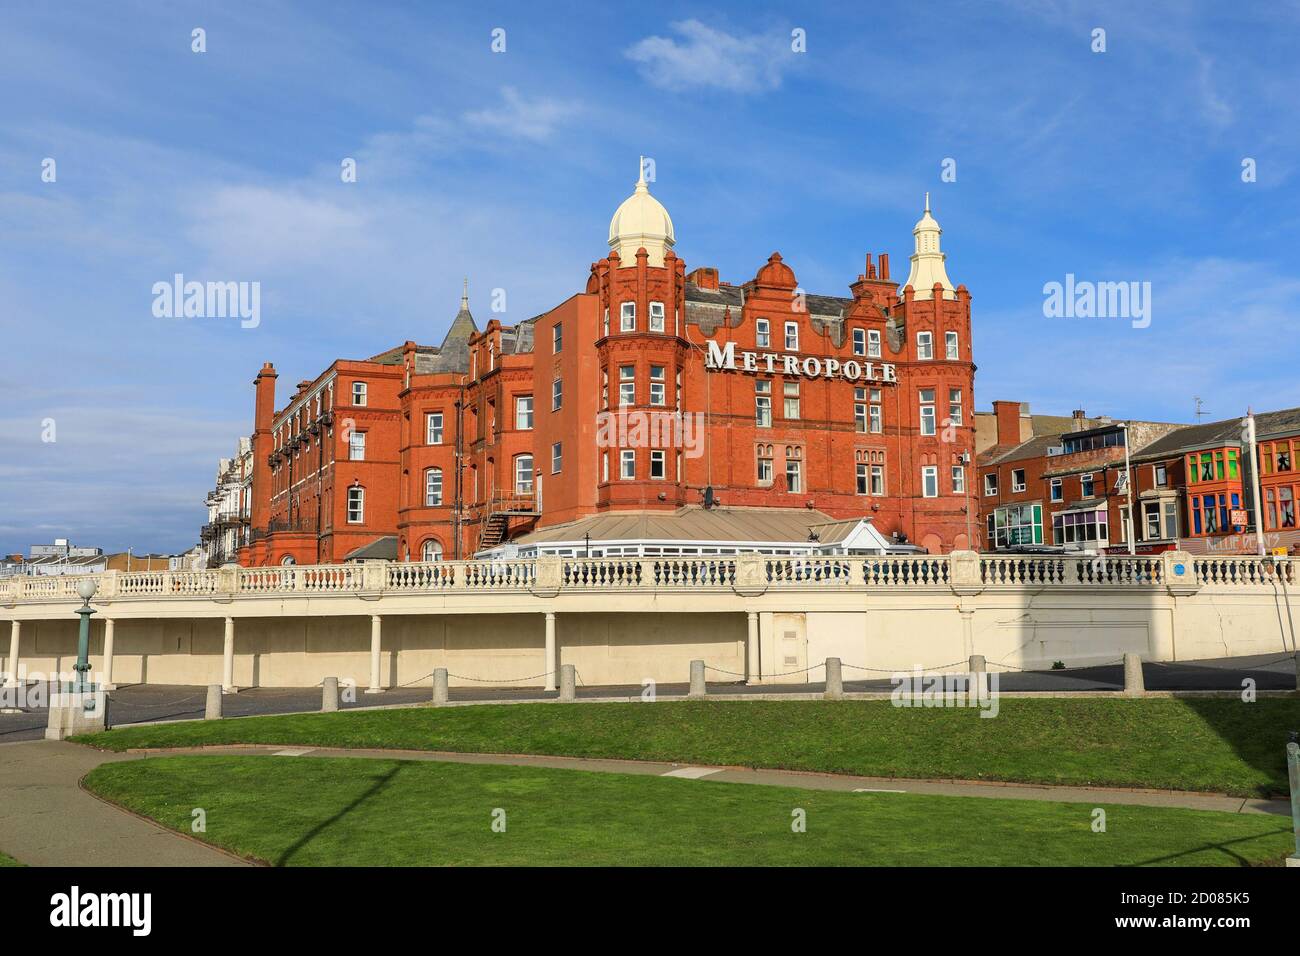 The Metropole Hotel on the seafront, Blackpool, Lancashire, England, UK Stock Photo